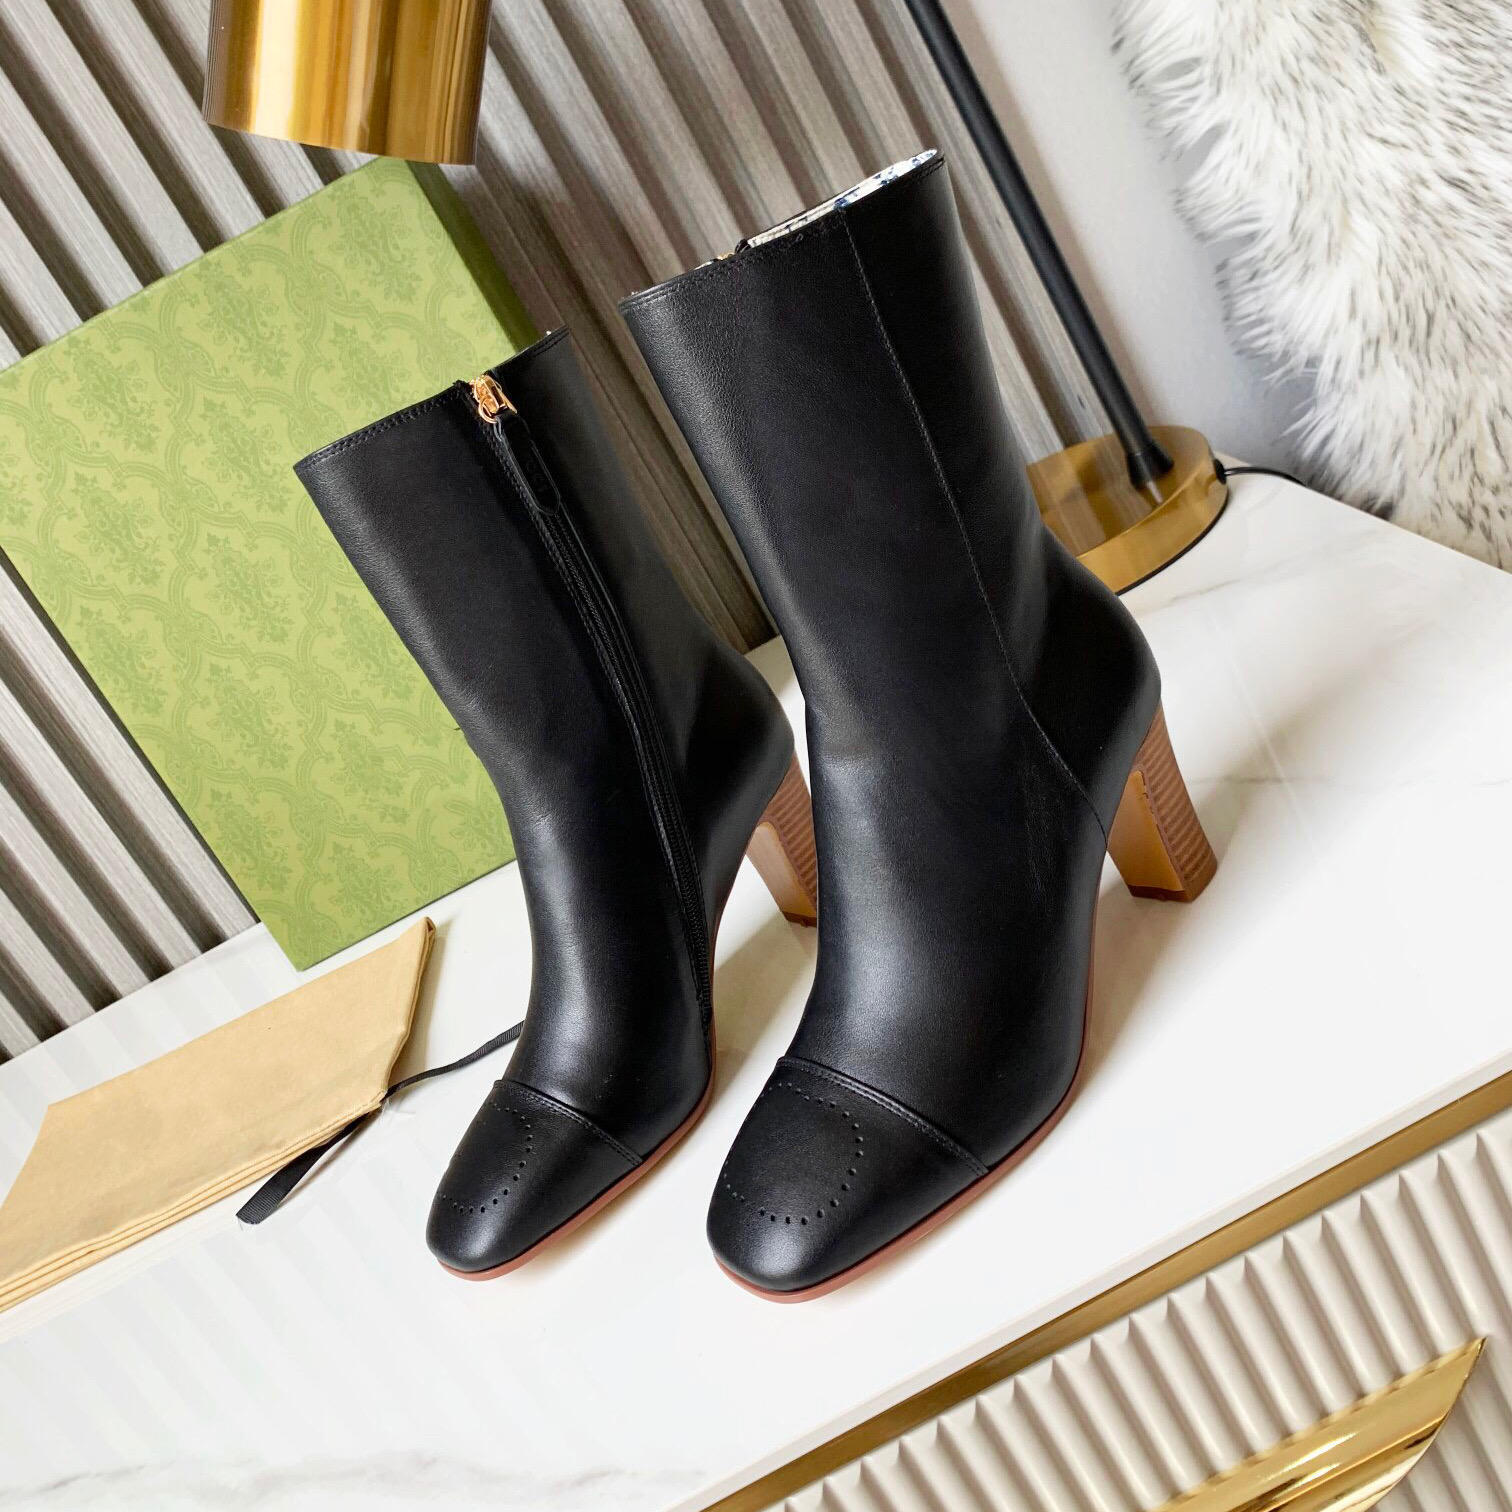 Yeni kadın ayak bileği botları lüks tasarımcı chelsea boots moda yüksek topuklu ayakkabılar 6cm lazer yumruklu harf kare jöle kaymaz kauçuk deri 35-43